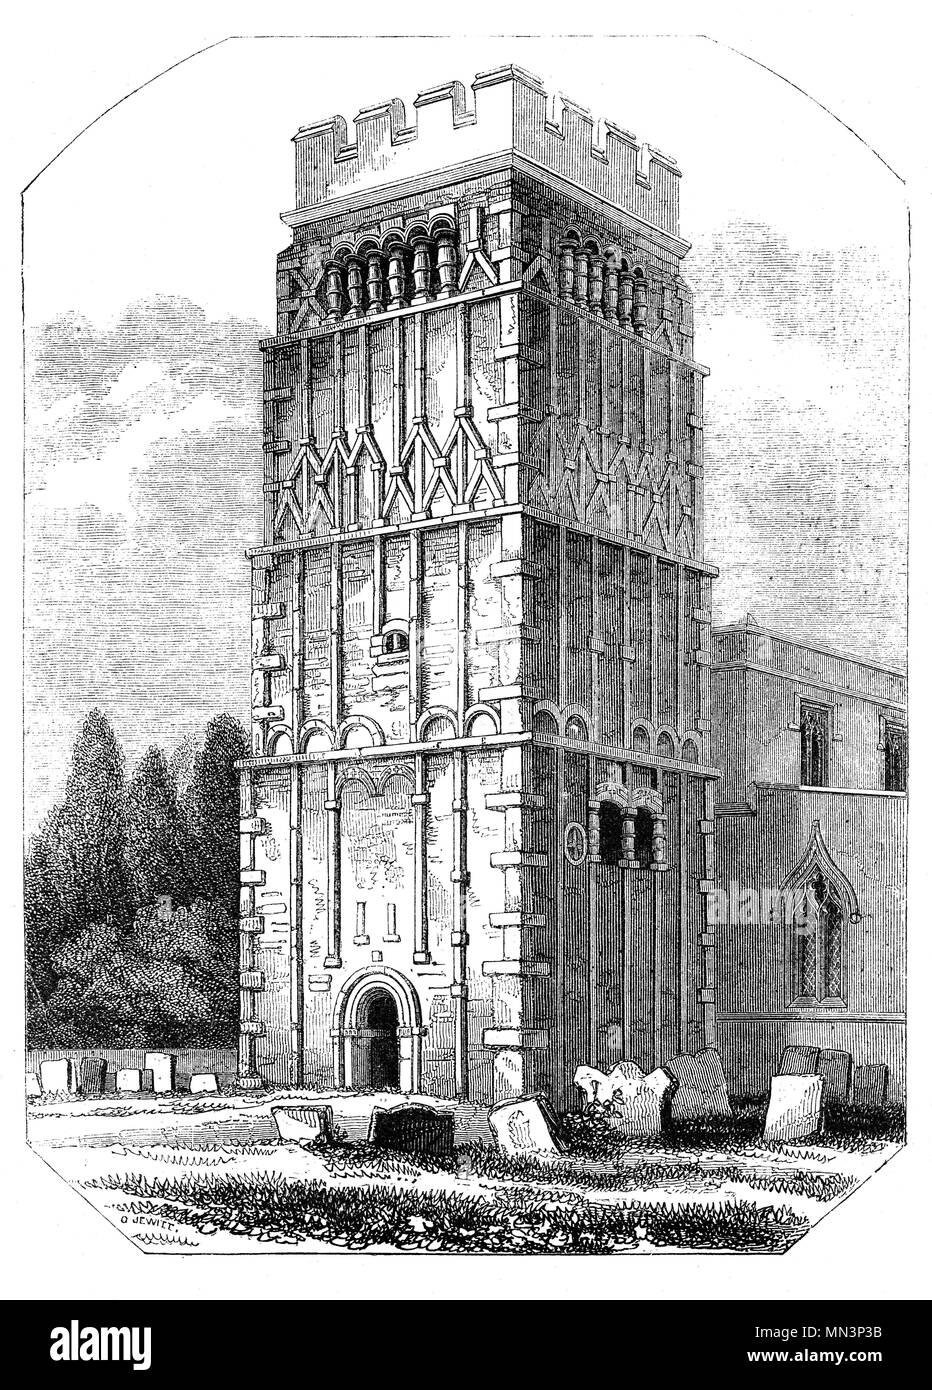 Der Turm von All Saints' Church, Earls Barton, einem bekannten angelsächsischen Kirche von England Pfarrkirche in Earls Barton, Northamptonshire. Es wird geschätzt, dass das Gebäude stammt aus dem 10. Jahrhundert später, kurz nach dem dänischen Luftangriffe auf England. Nach der Normannischen Eroberung Englands ein angelsächsischer namens Waltheof der ersten Earl hatte von Northampton. Er war verheiratet mit der Nichte von William ICH, Judith, und sie Land wurde am Barton gewährt später genannt Earls Barton. Stockfoto